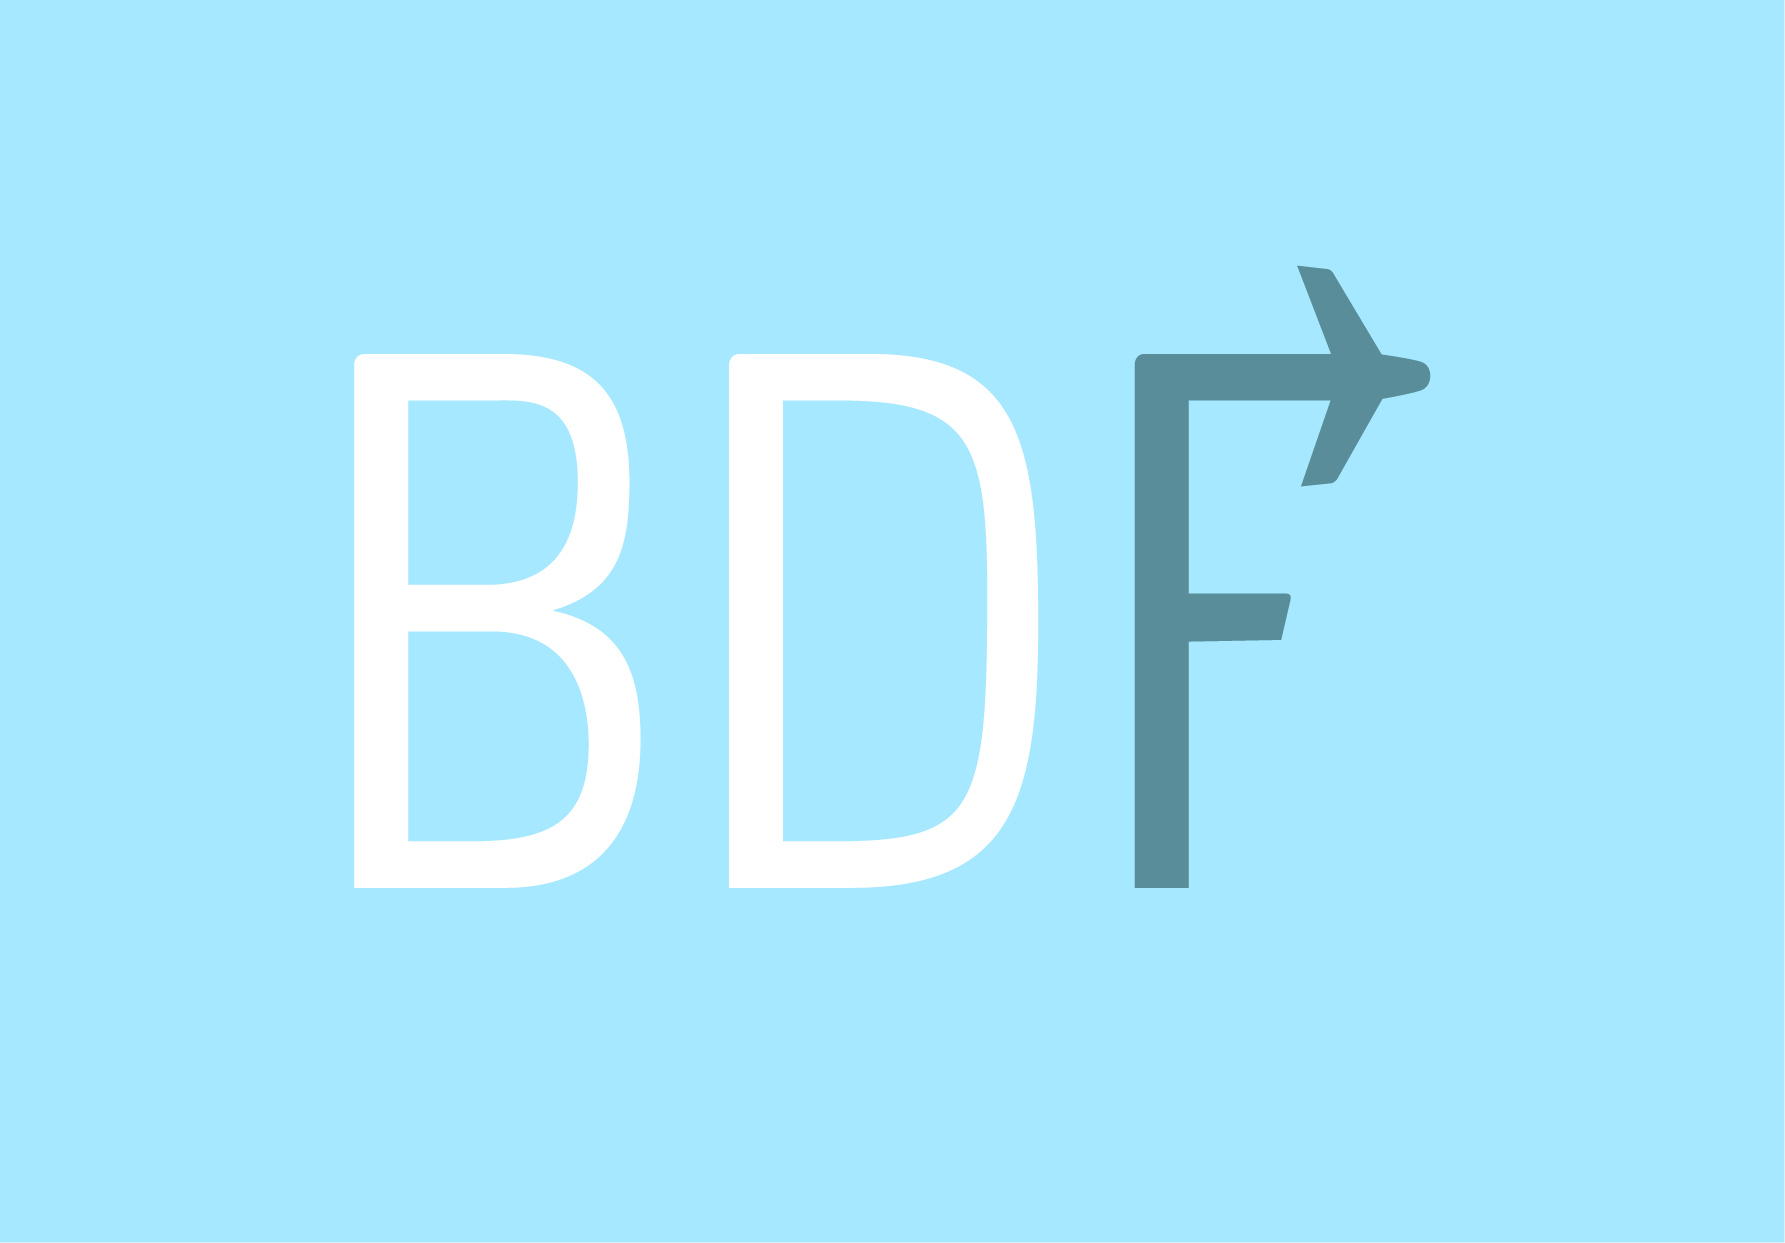 Logo BDF